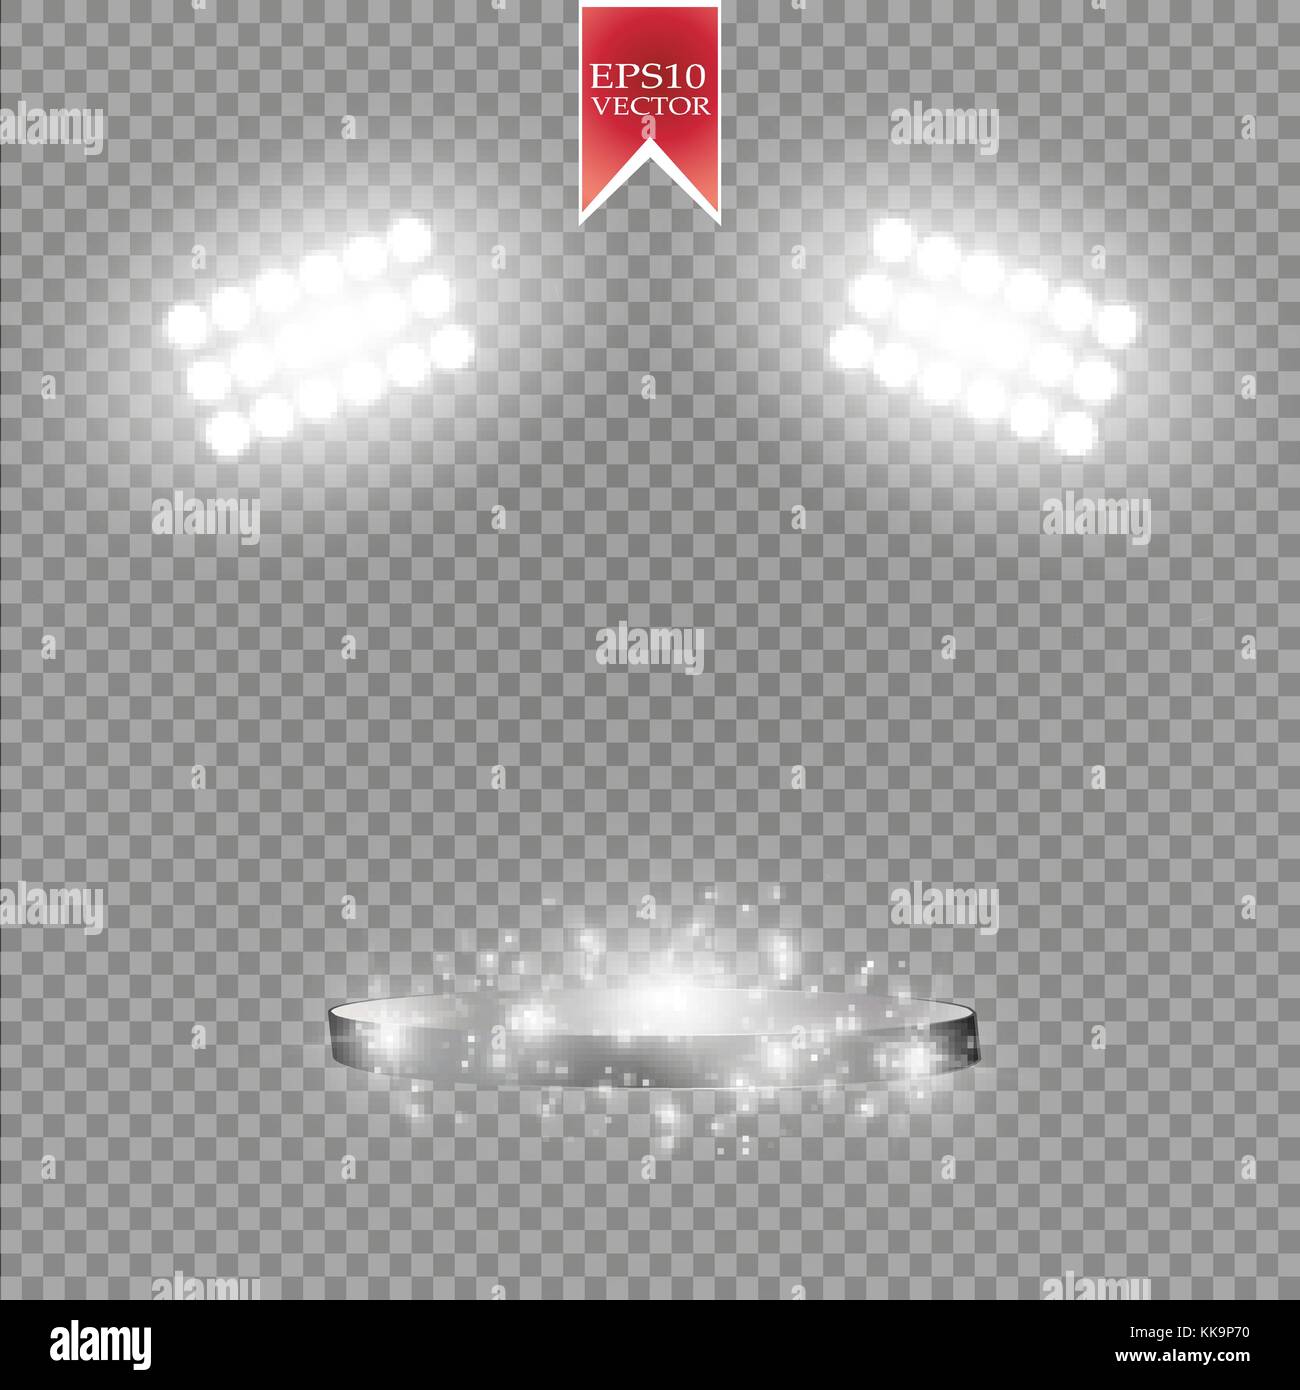 Weiß Vektor spotlight Lichteffekt auf transparenten Hintergrund. Konzert Szene mit Funken von Glow ray beleuchtet. Stadion Projektor. Show room Stock Vektor